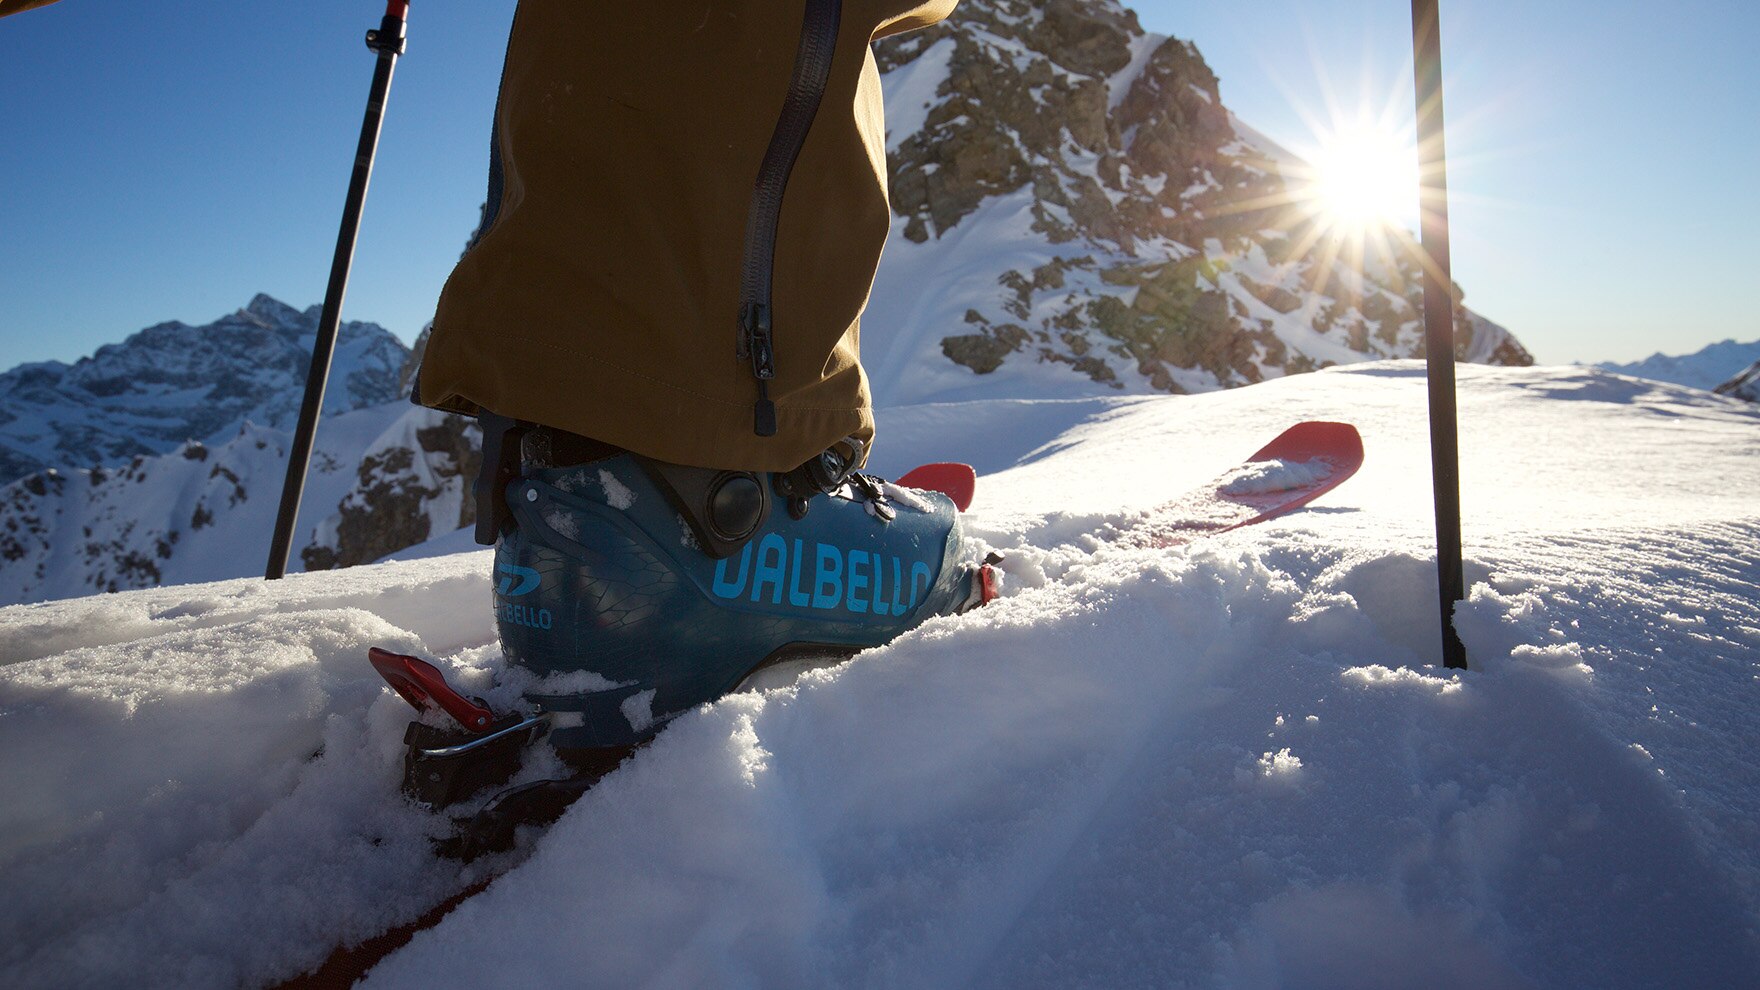 Die erste aufstiegsorientierte Skitouren-Schuh-Linie von Dalbello bietet eine vollkommen neue, komfortable Passform und eine geschmeidige Gehfunktion.